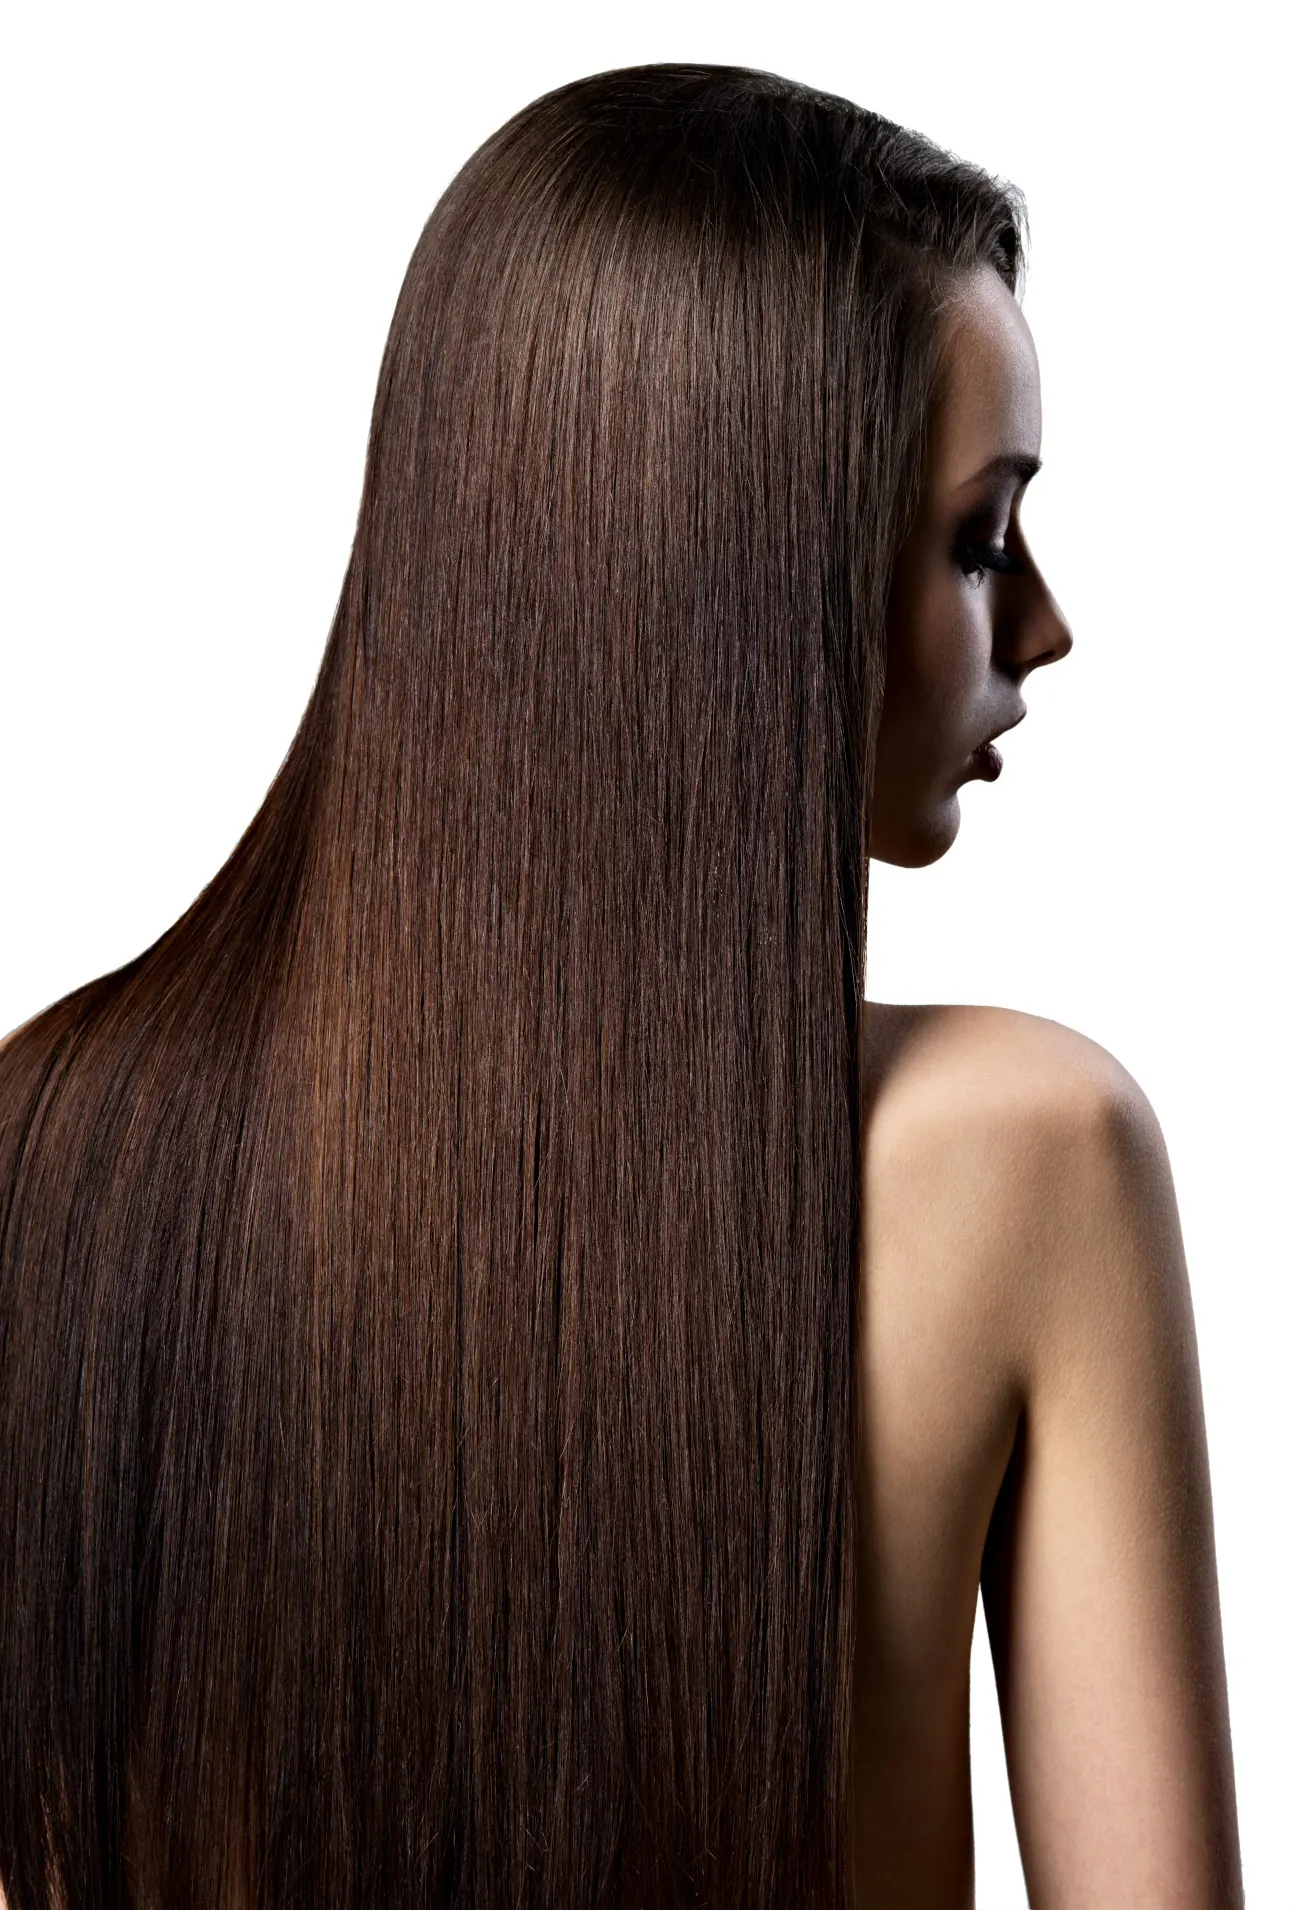 Włosy przedłużone i zagęszczone - mycie | Baza wiedzy HairMe